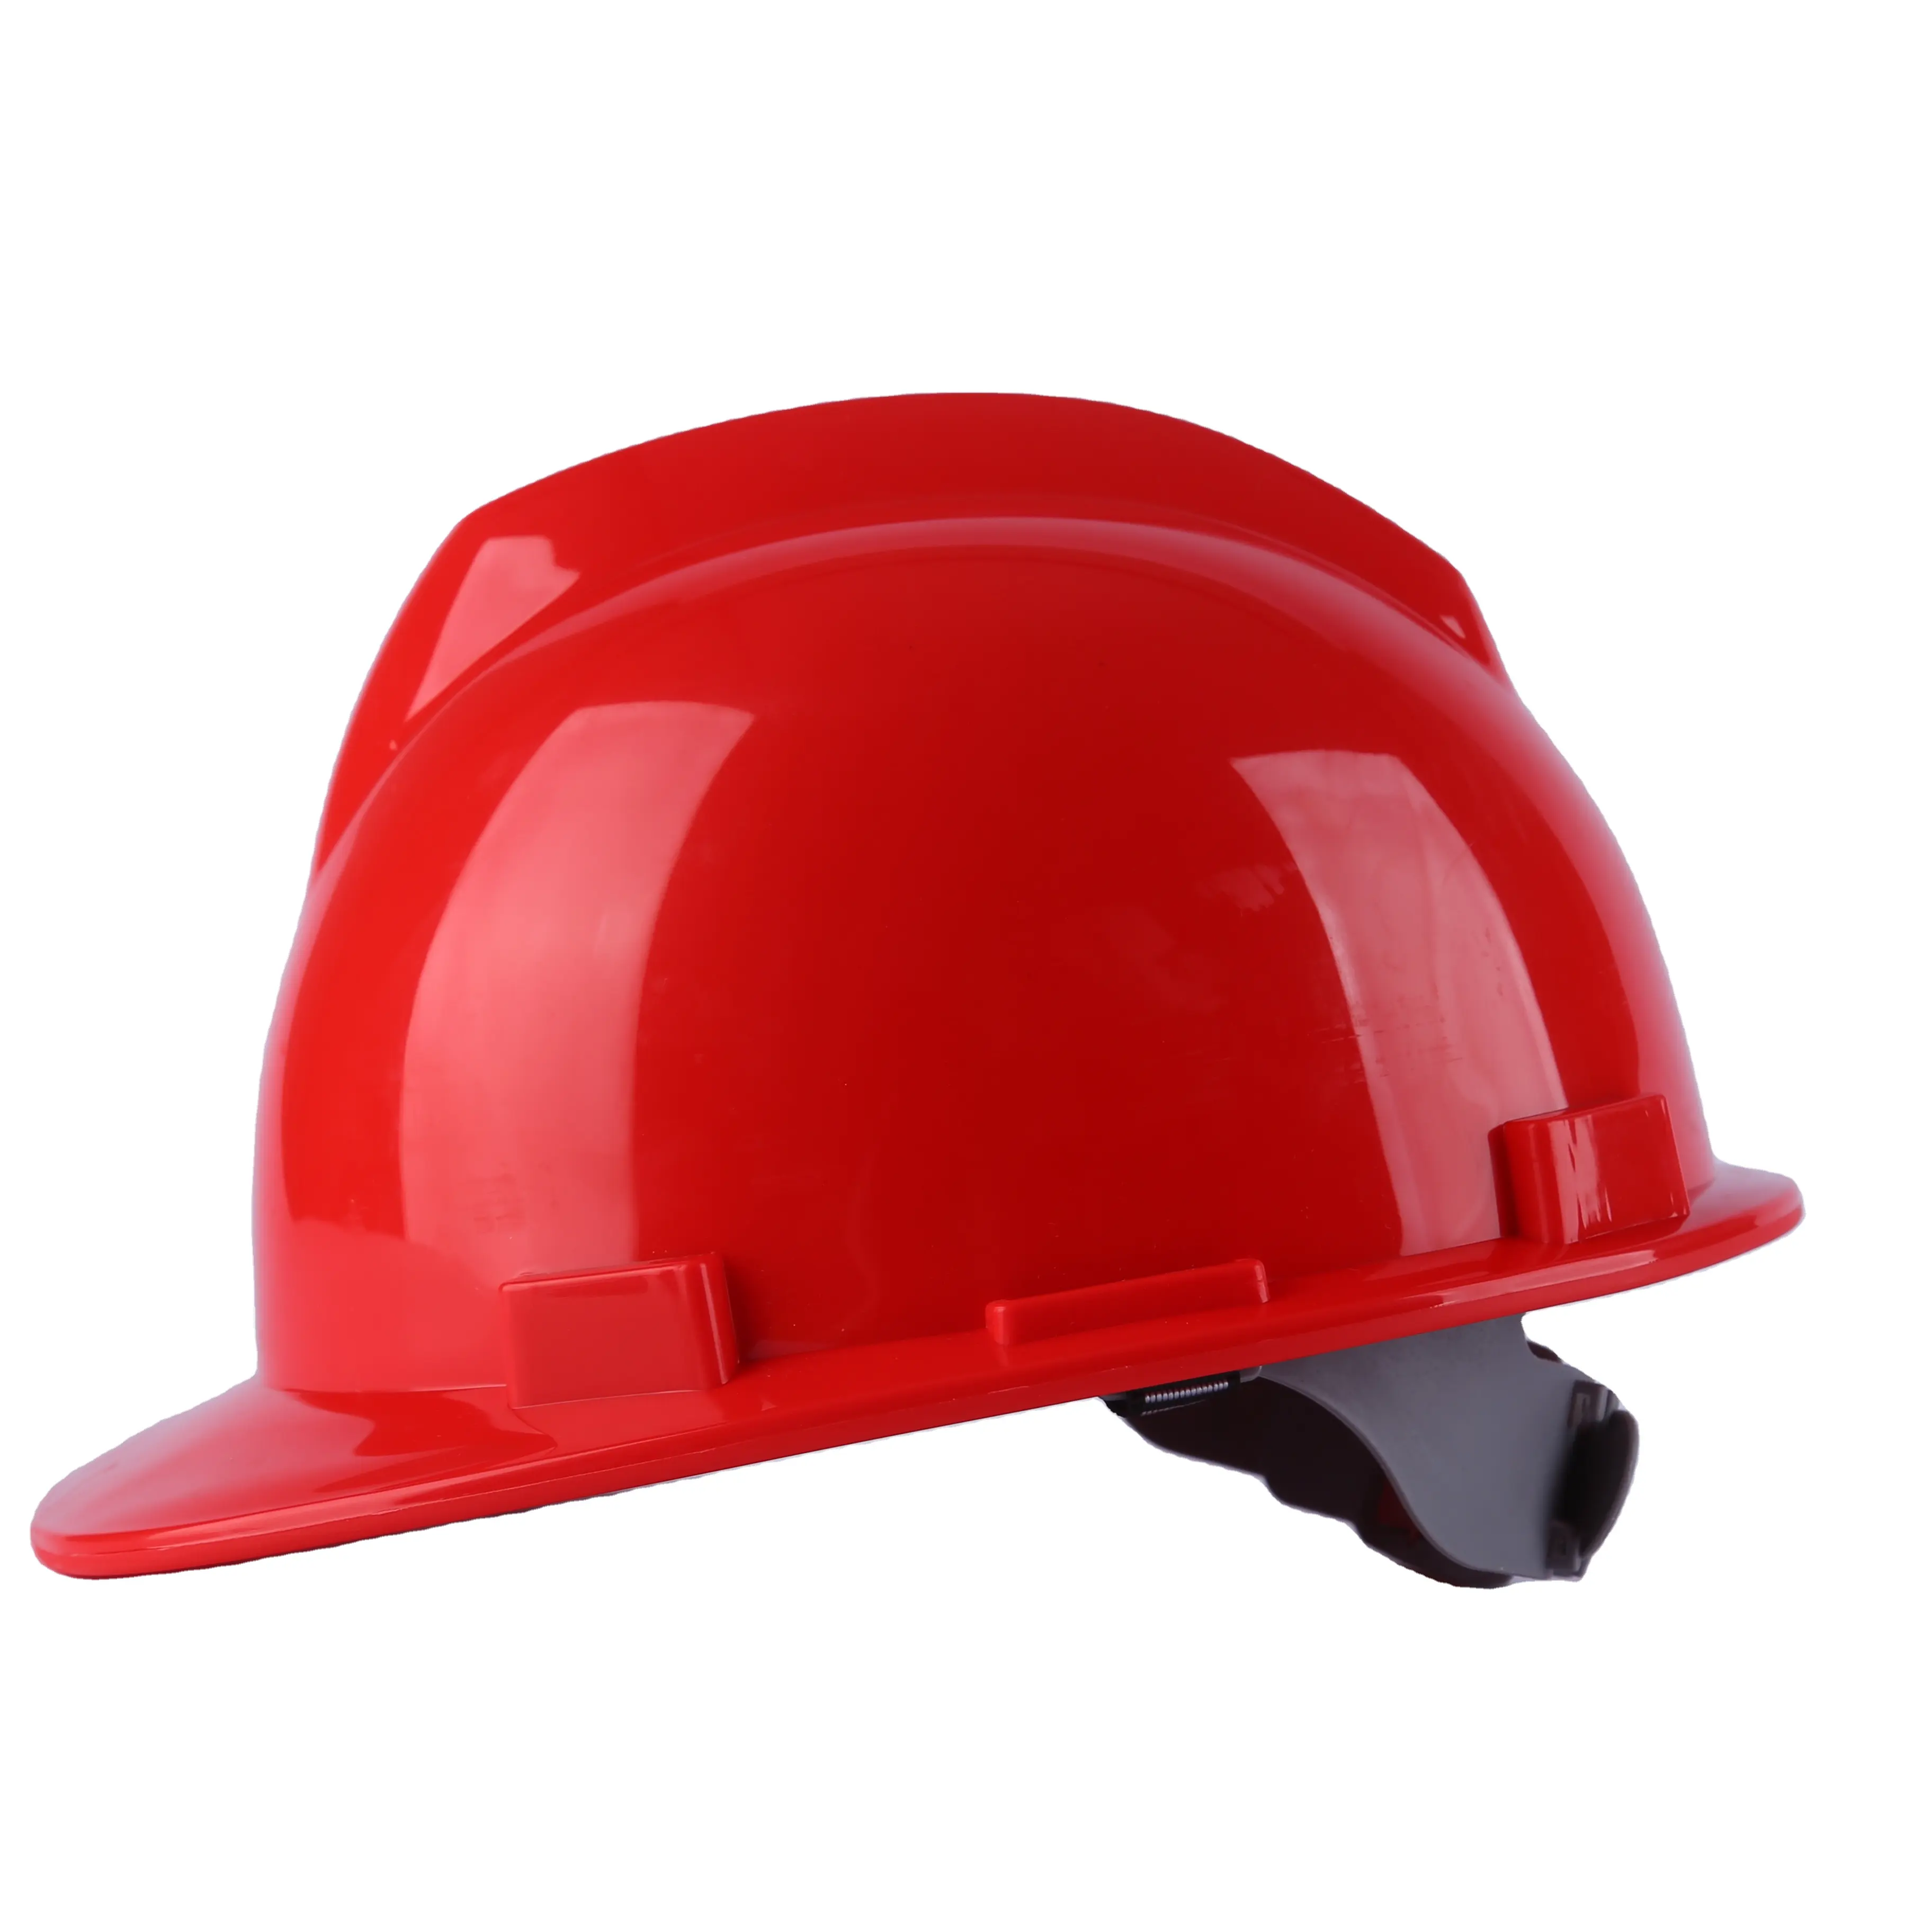 Kişisel koruyucu madencilik endüstriyel çalışma emniyet kaskı inşaat sanayi sert şapka havalandırmalı atölye işçisi